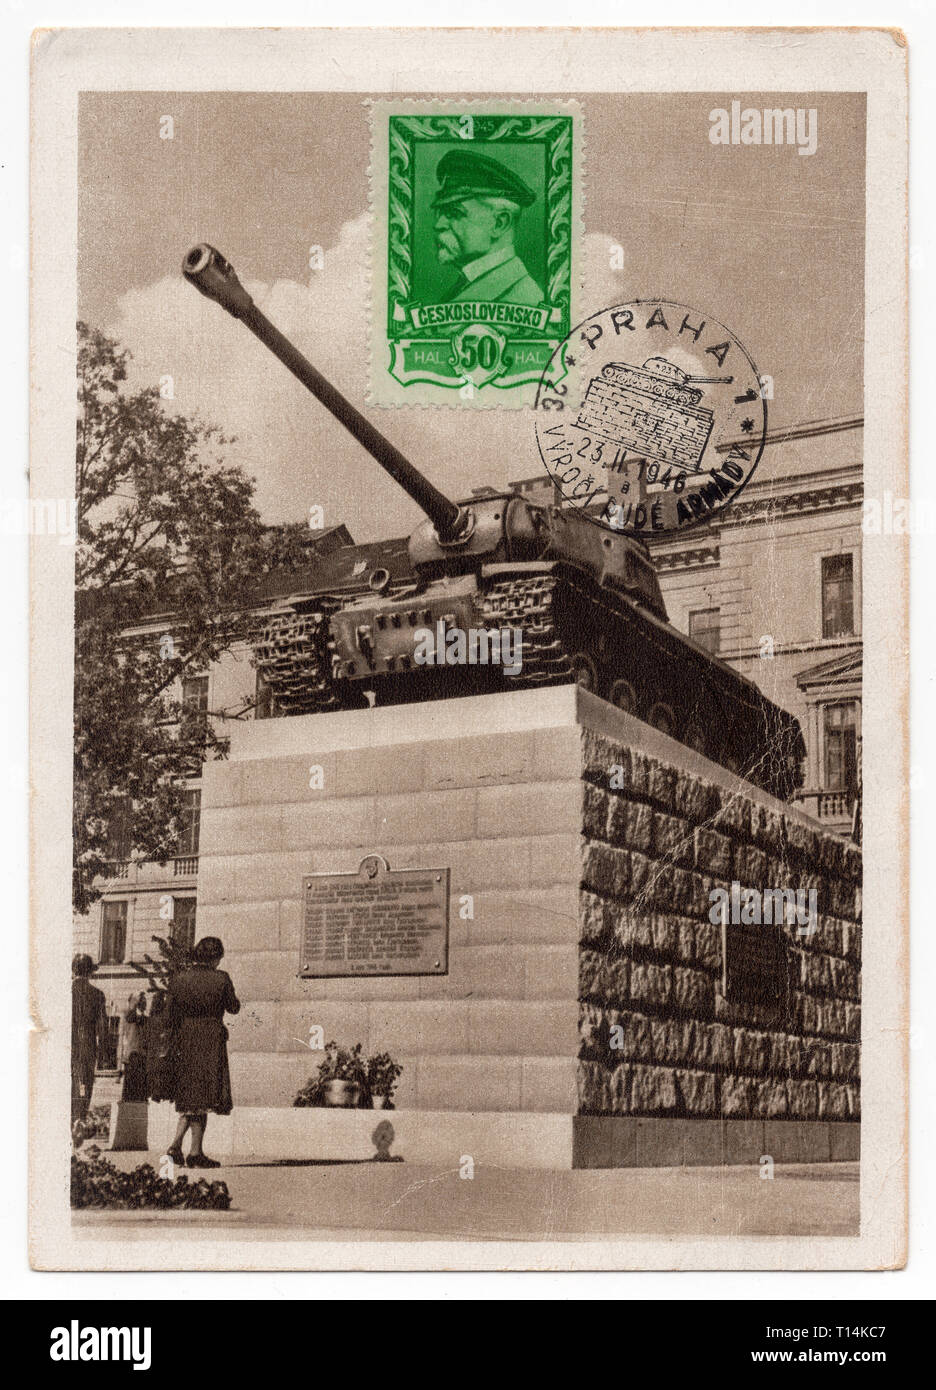 Denkmal für sowjetische Panzer Besatzung (Památník sovětských tankistů) in Prag, Tschechoslowakei, der in der Tschechoslowakischen Ansichtskarte vor 1946 ausgestellten dargestellt. Das Denkmal wurde im Juli 1945 stellte die sowjetischen Panzer T-34 Nummer 24, die in Prag als Erstes am Morgen am 9. Mai 1945 eingetragen zu gedenken. In der Tat eine Sowjetische heavy tank-2 wurde auf dem Sockel installiert, und die Nummer war falsch zu 23 geändert. Das Monument, später bekannt als The Pink Tank wurde im Juni 1991 entfernt. Mit freundlicher Genehmigung des Azoor Postkarte Sammlung. Stockfoto